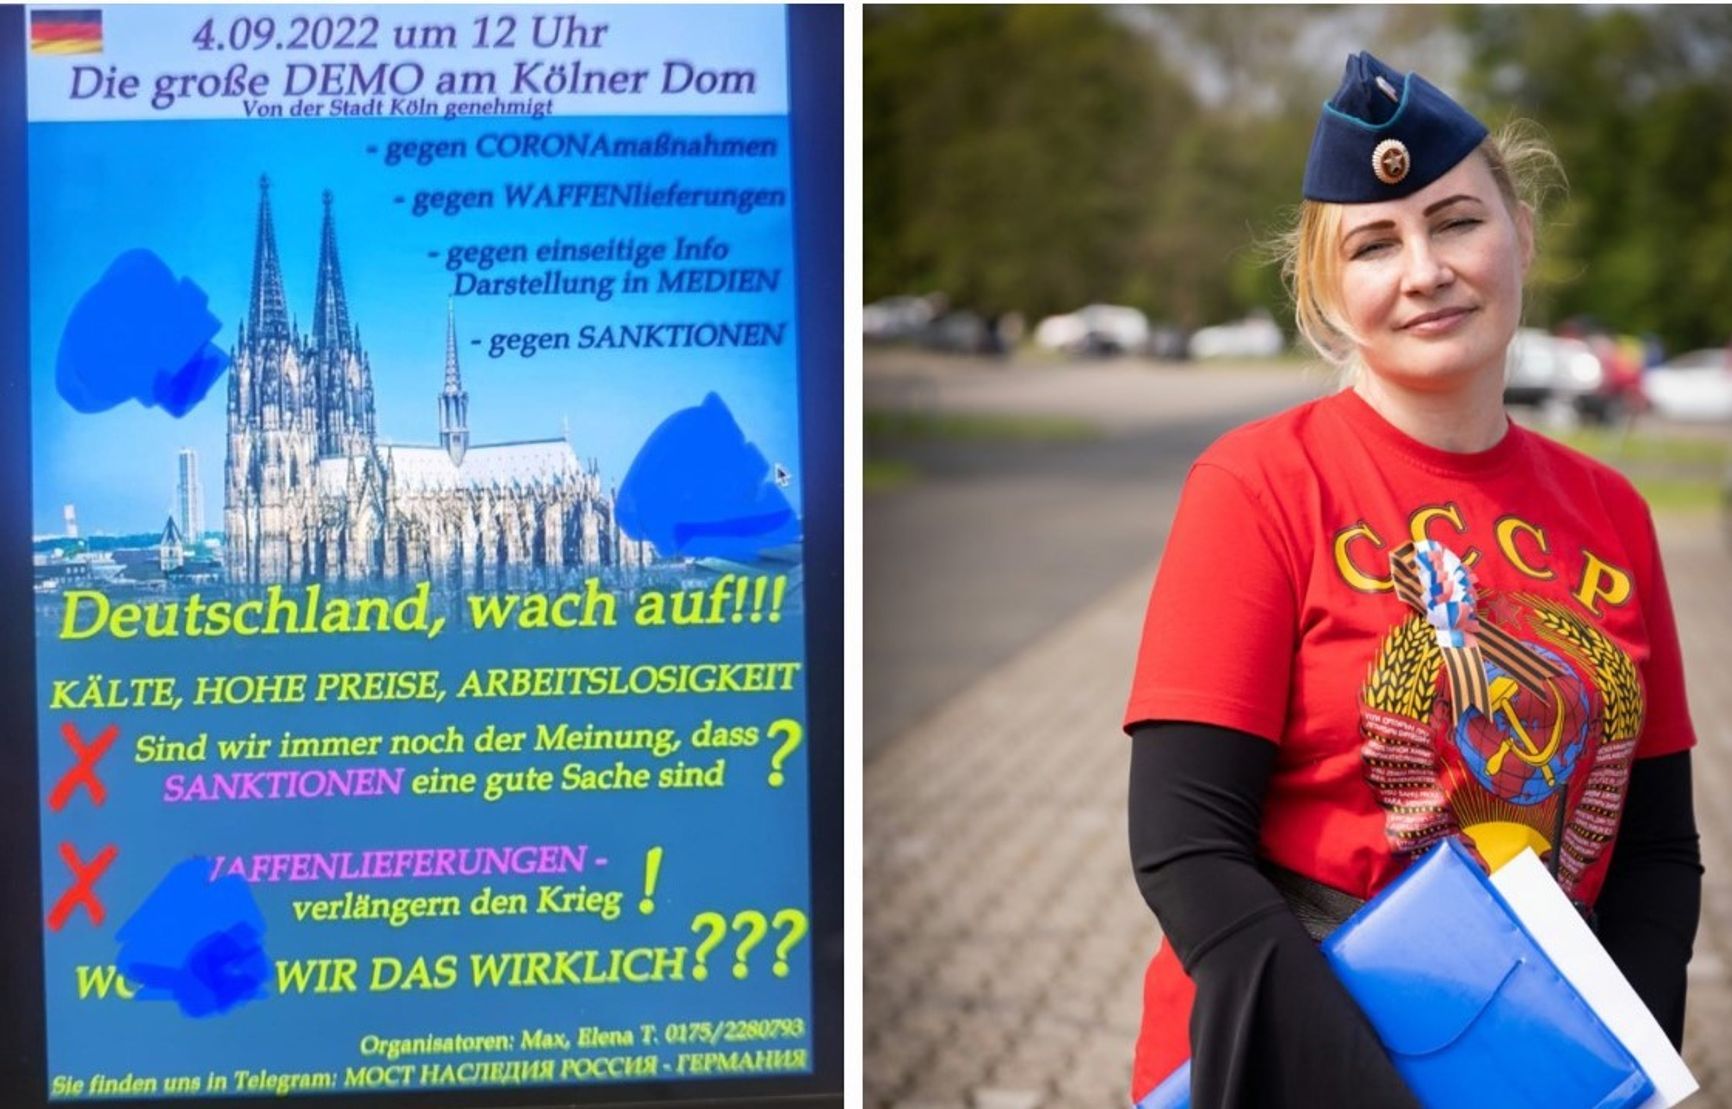 Cologne rally flyer / Organizer Elena Kolbasnikova